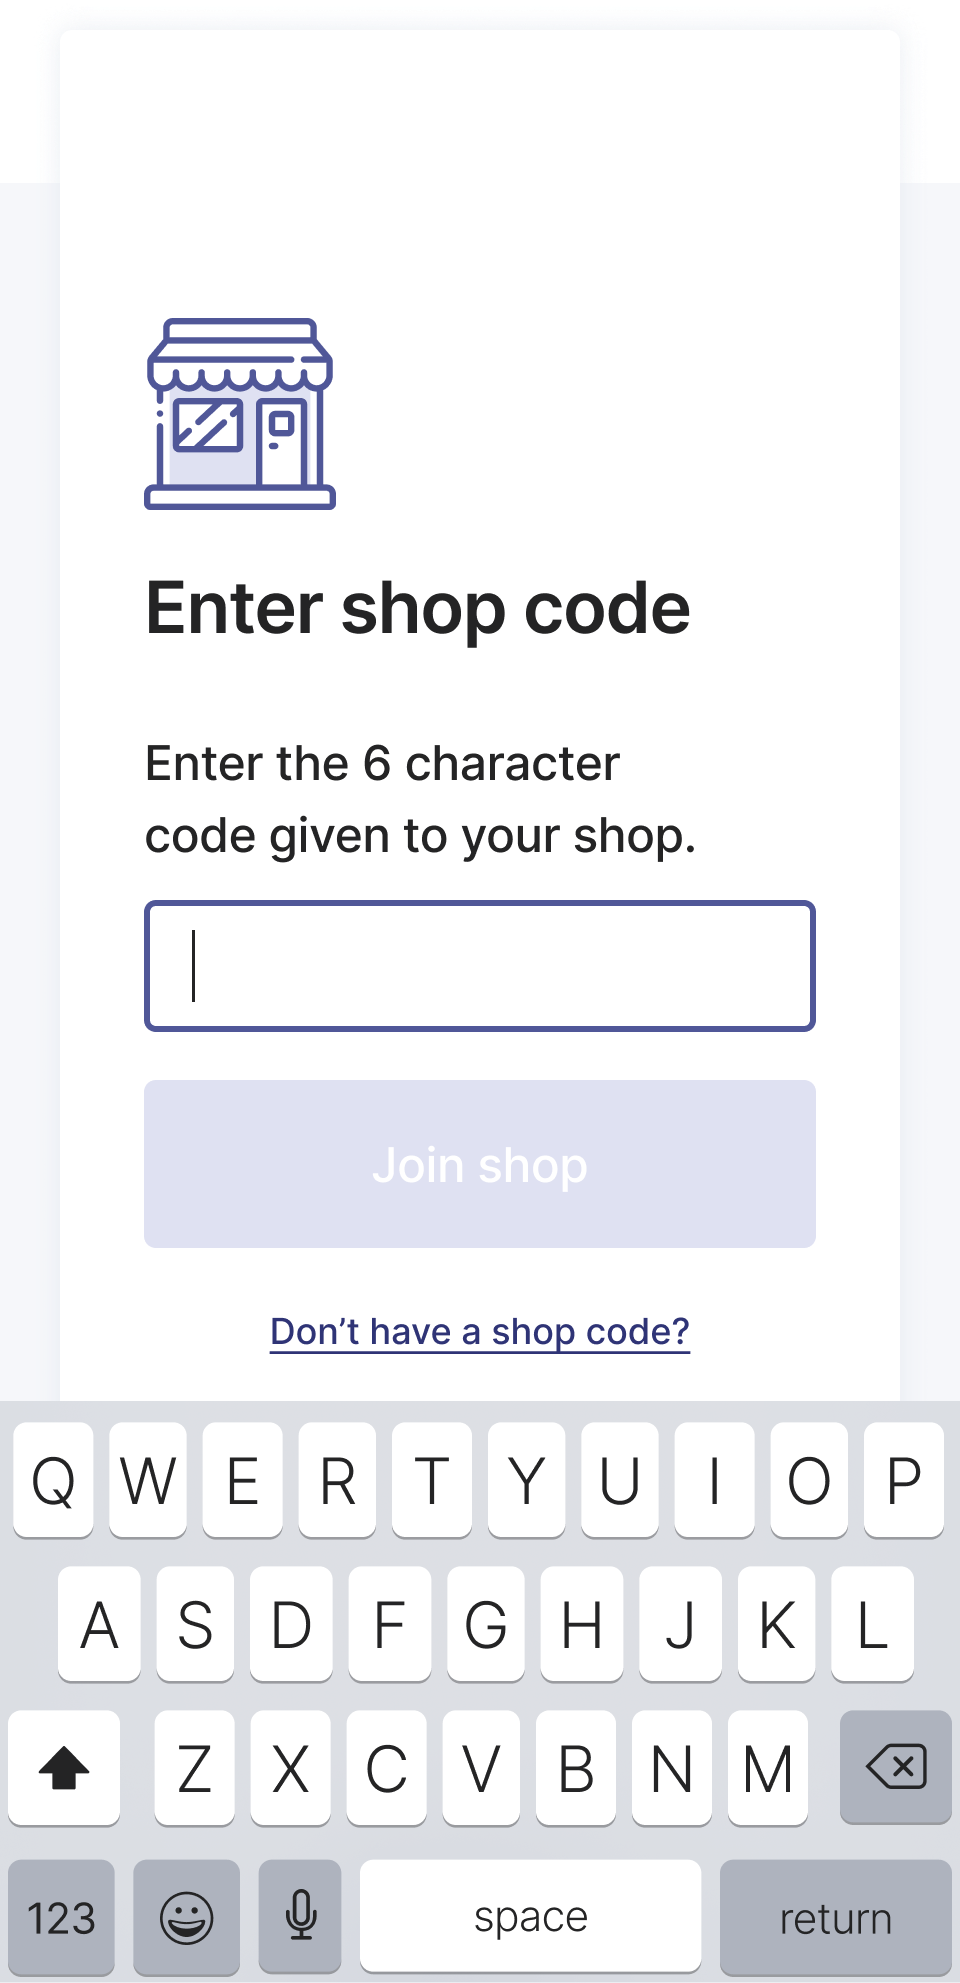 Enter shop code screen